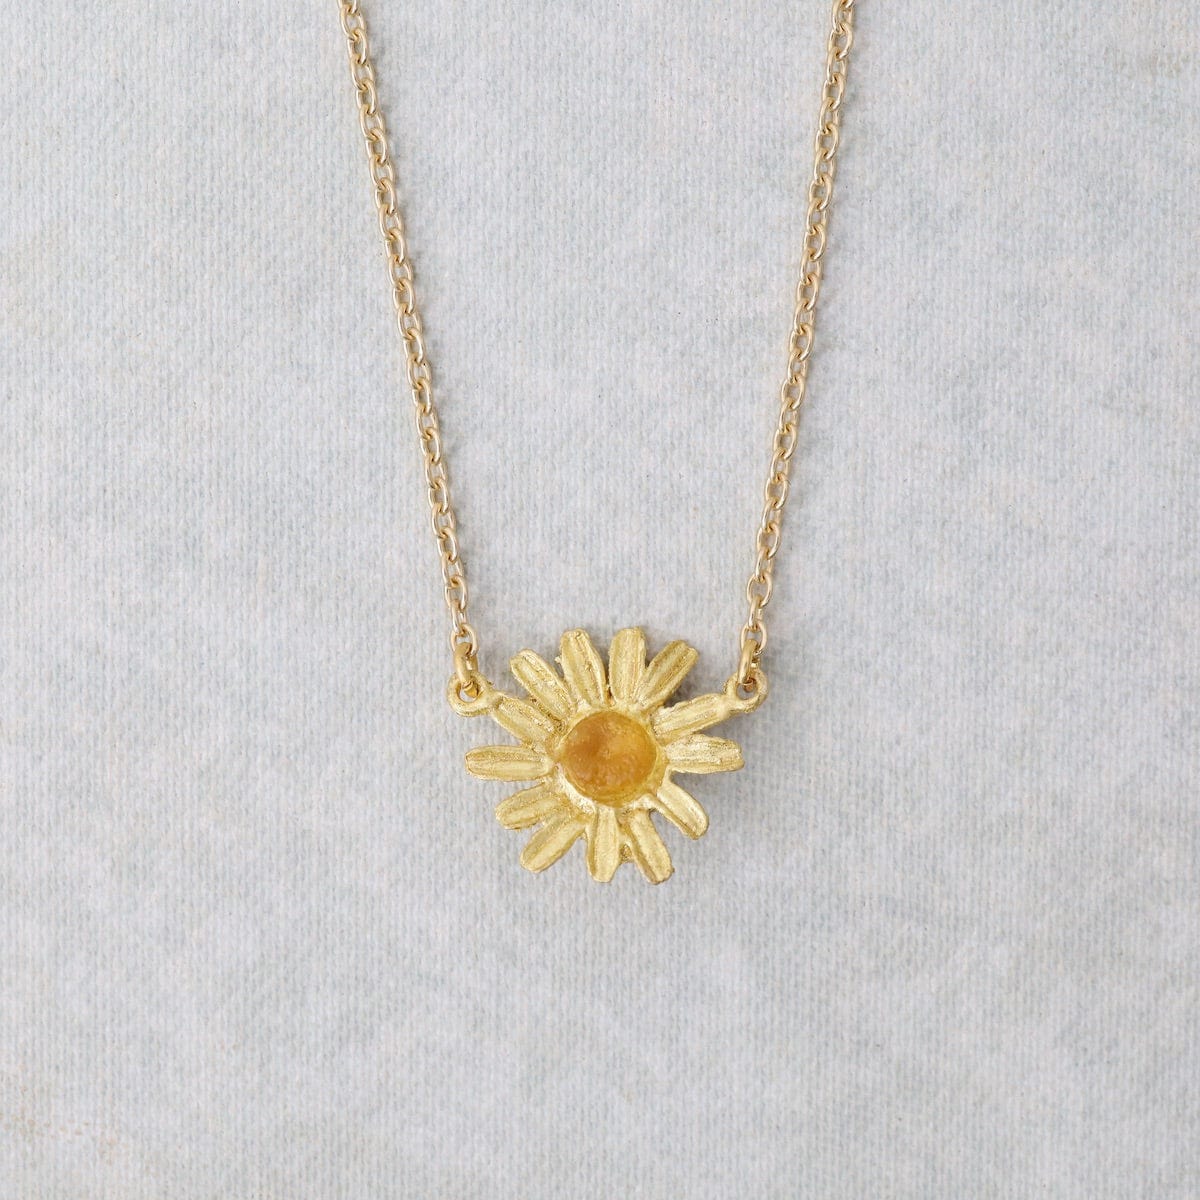 NKL Golden Daisy Single Flower Pendant